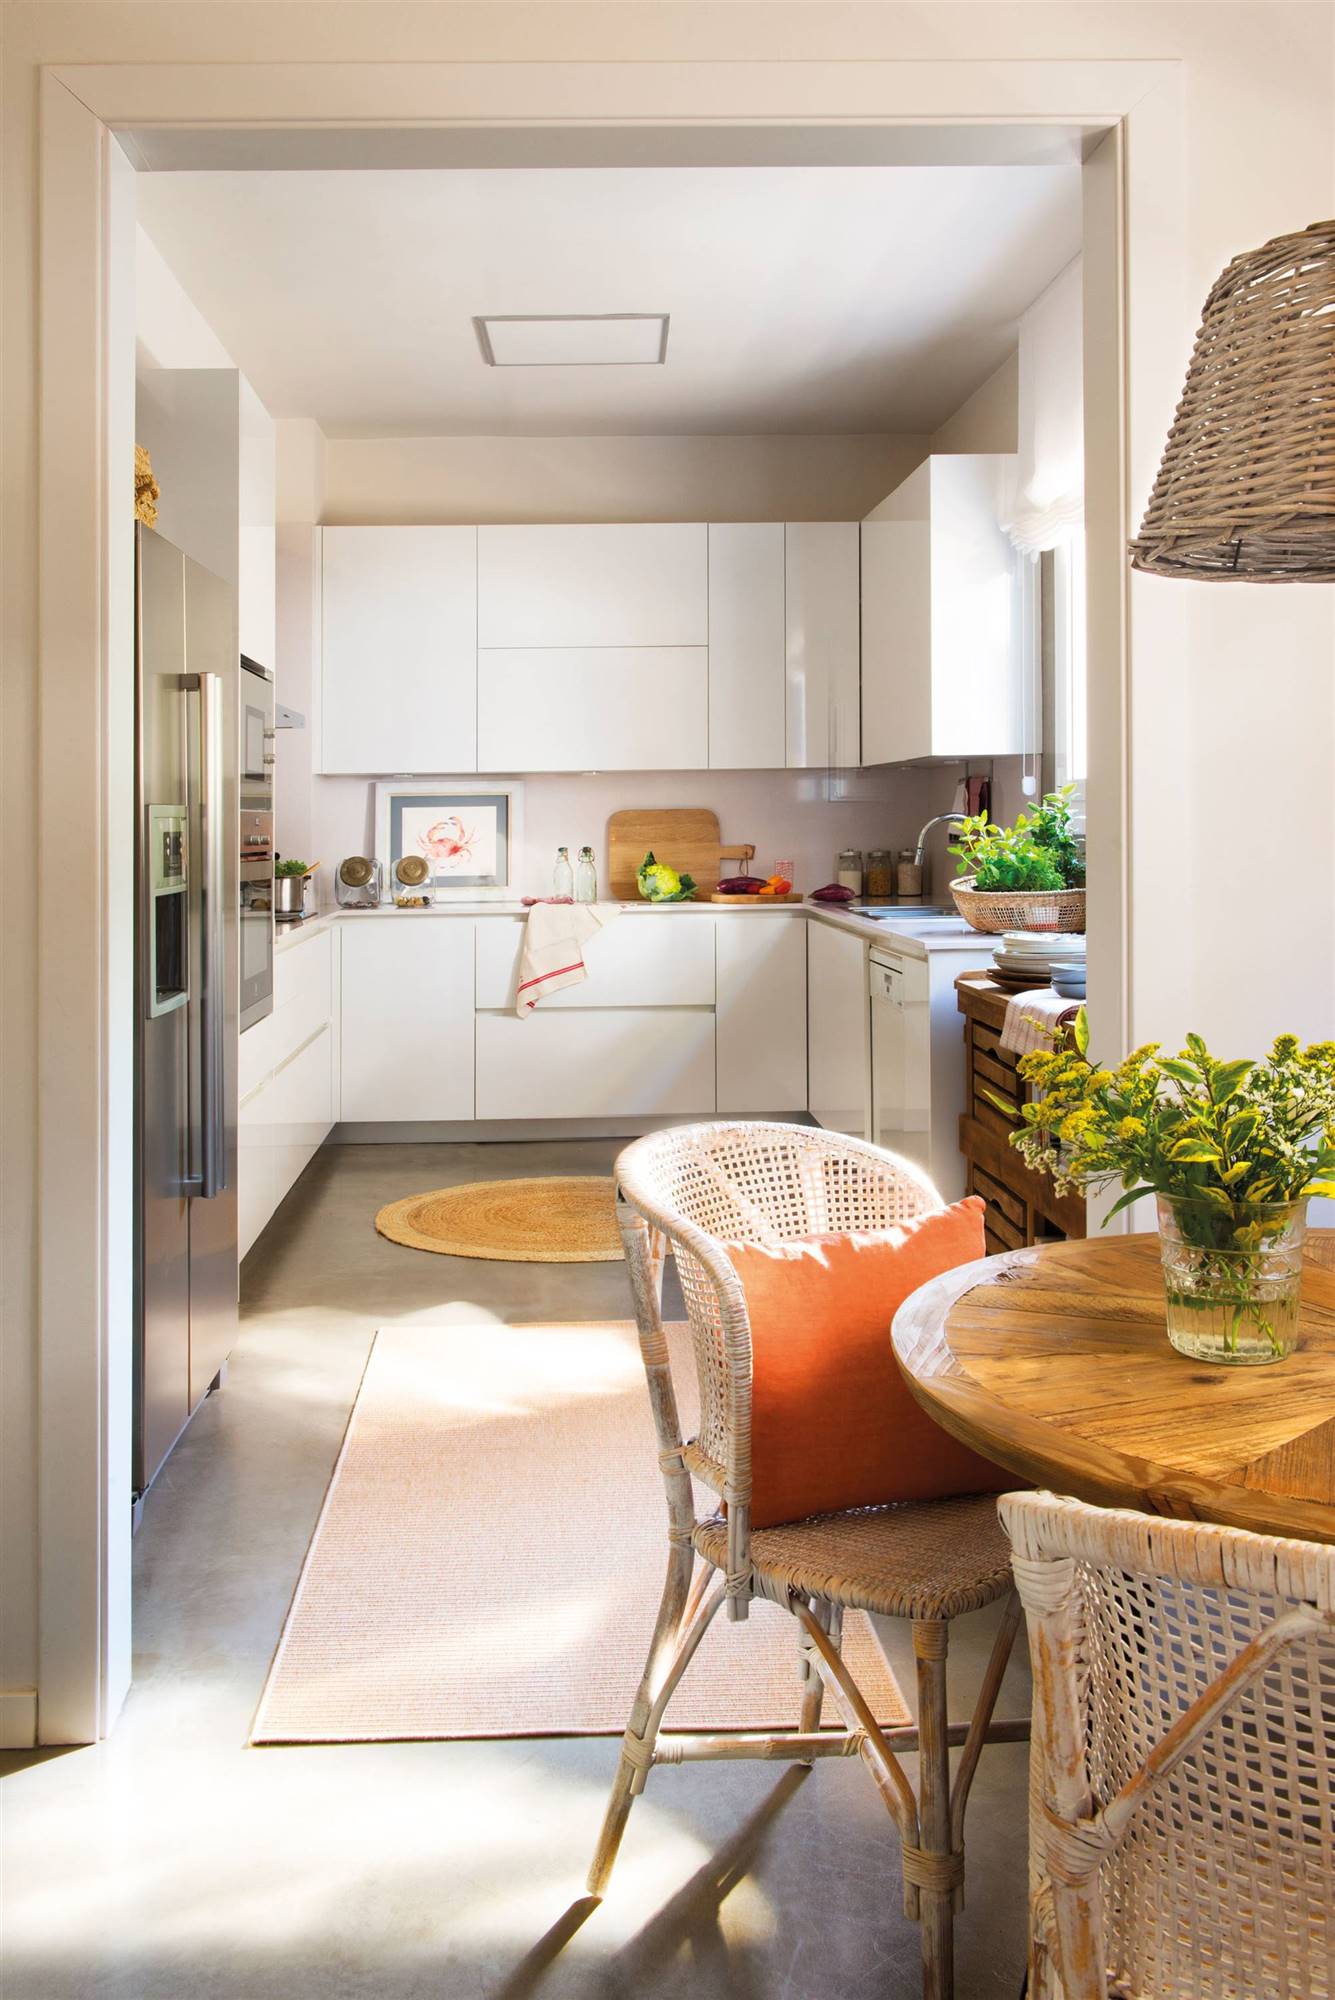 Moderna cocina abierta al comedor con muebles blancos sin tiradores, detalles de fibras y electrodomésticos de acero inoxidable.